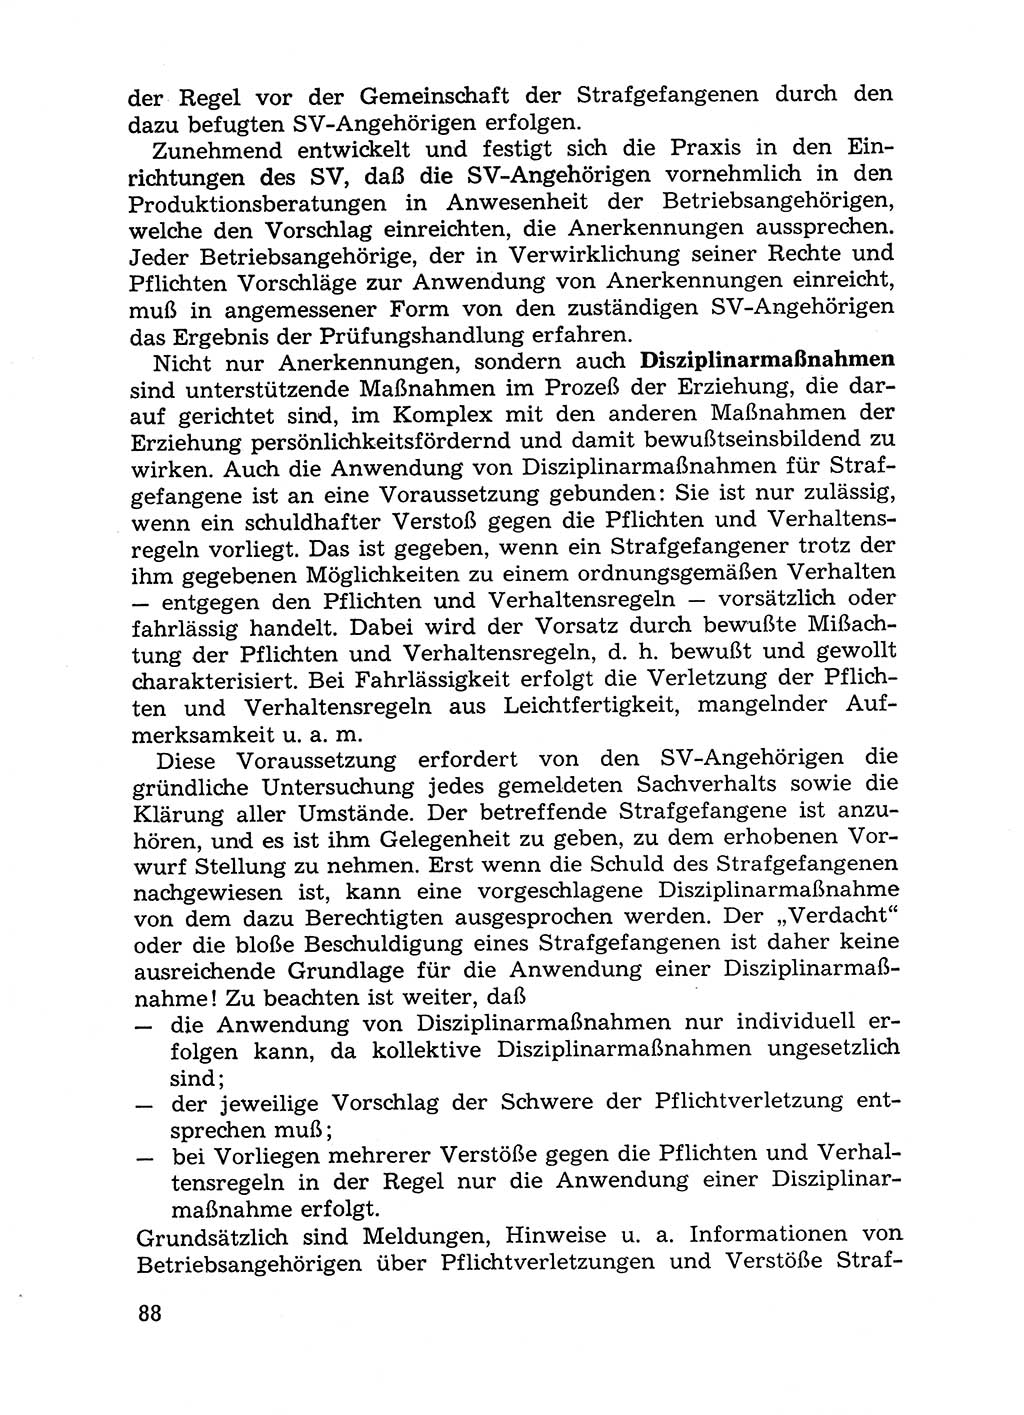 Handbuch für Betriebsangehörige, Abteilung Strafvollzug (SV) [Ministerium des Innern (MdI) Deutsche Demokratische Republik (DDR)] 1981, Seite 88 (Hb. BA Abt. SV MdI DDR 1981, S. 88)